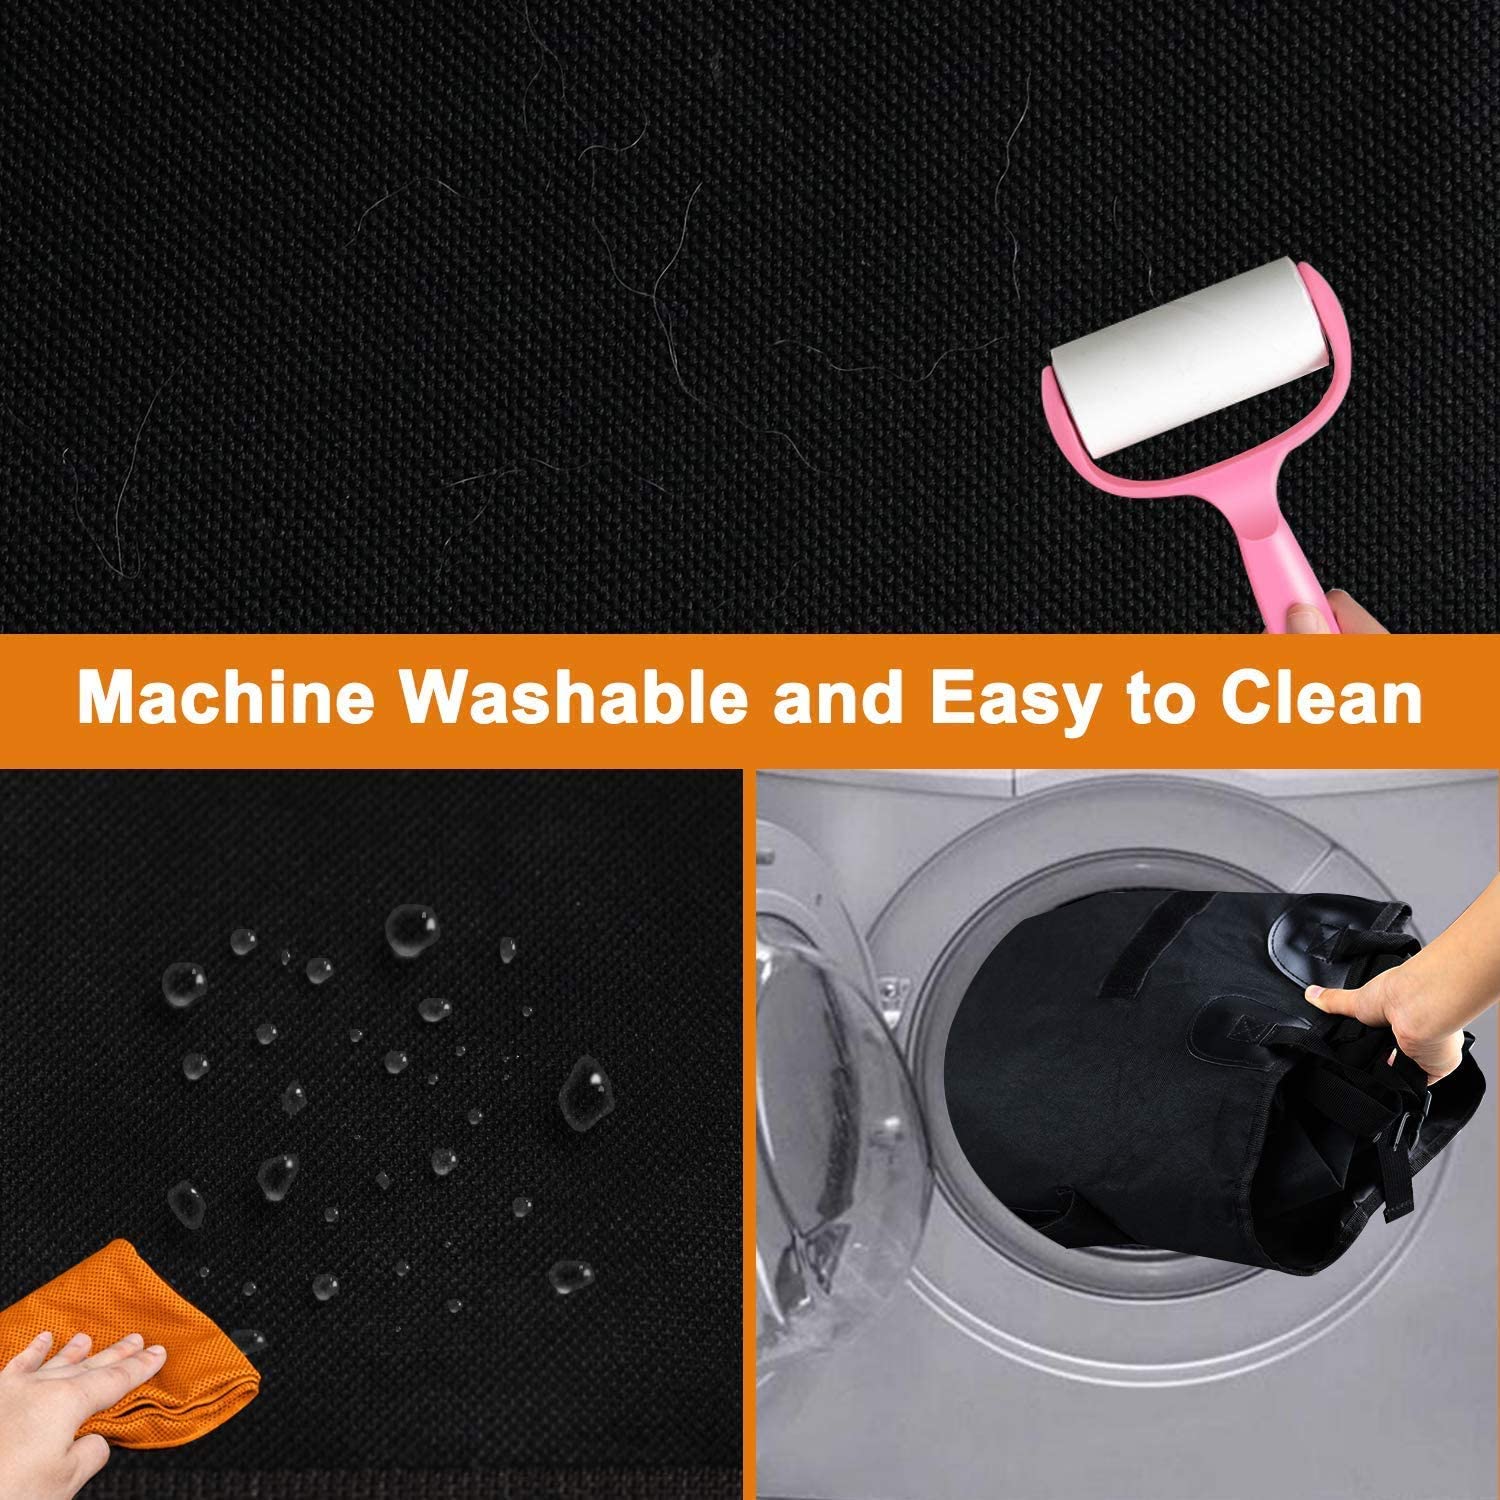  وقتی روکش محموله کثیف شد، می توانید به راحتی آن را بردارید و در ماشین لباسشویی بشویید تا دوباره تازه، تمیز و آماده استفاده شود